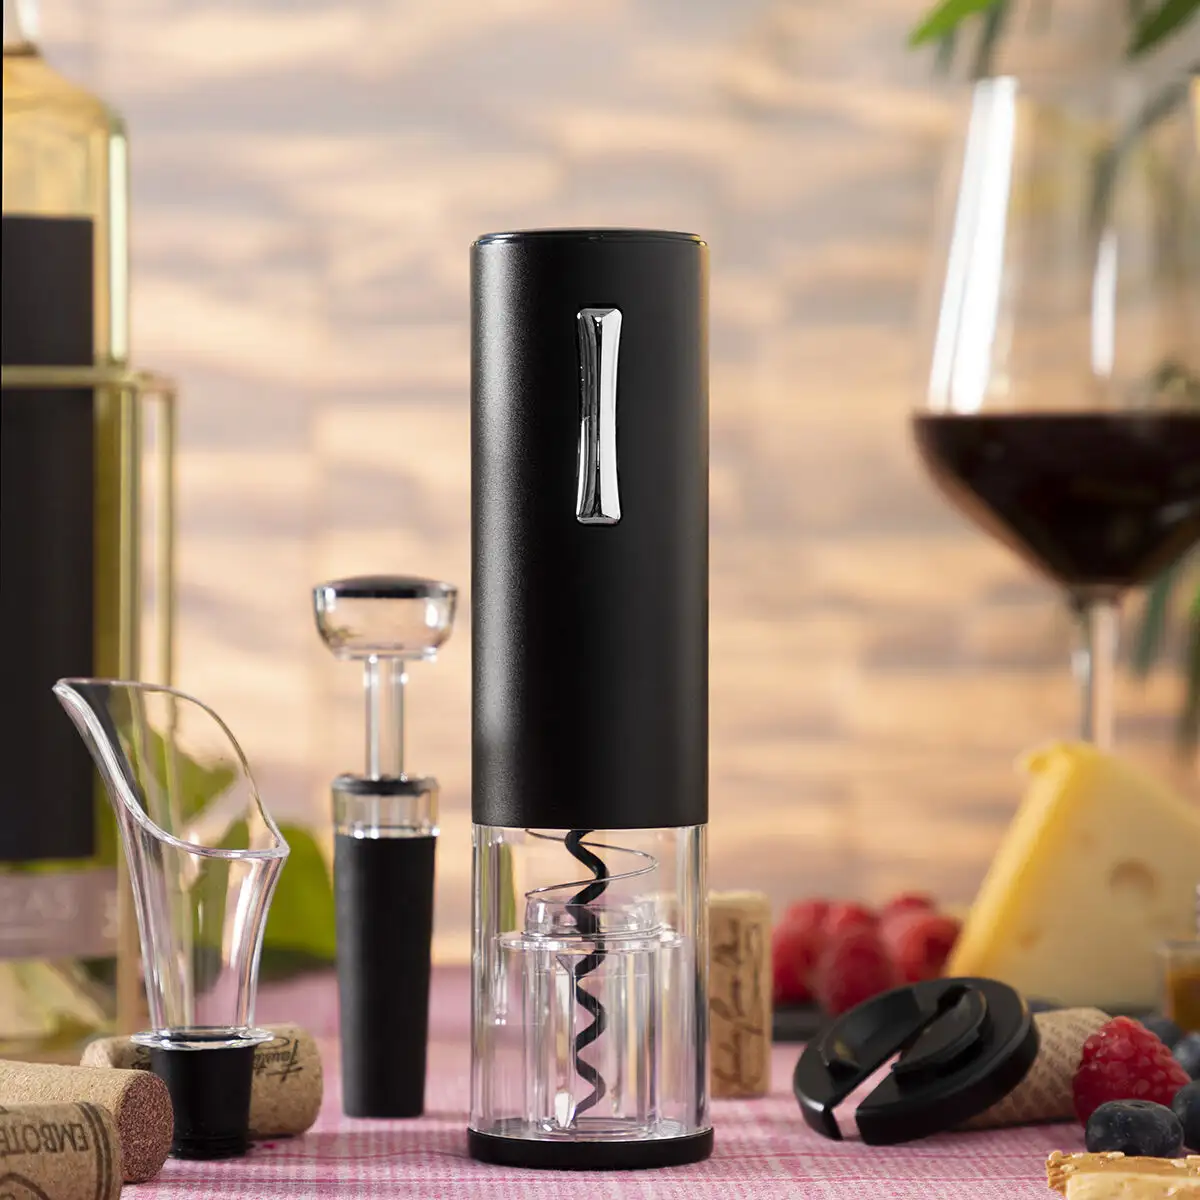 Tire bouchon electrique rechargeable avec accessoires pour le vin corklux innovagoods_6807. DIAYTAR SENEGAL - Votre Destination pour un Shopping Inégalé. Naviguez à travers notre sélection minutieuse pour trouver des produits qui répondent à tous vos besoins.